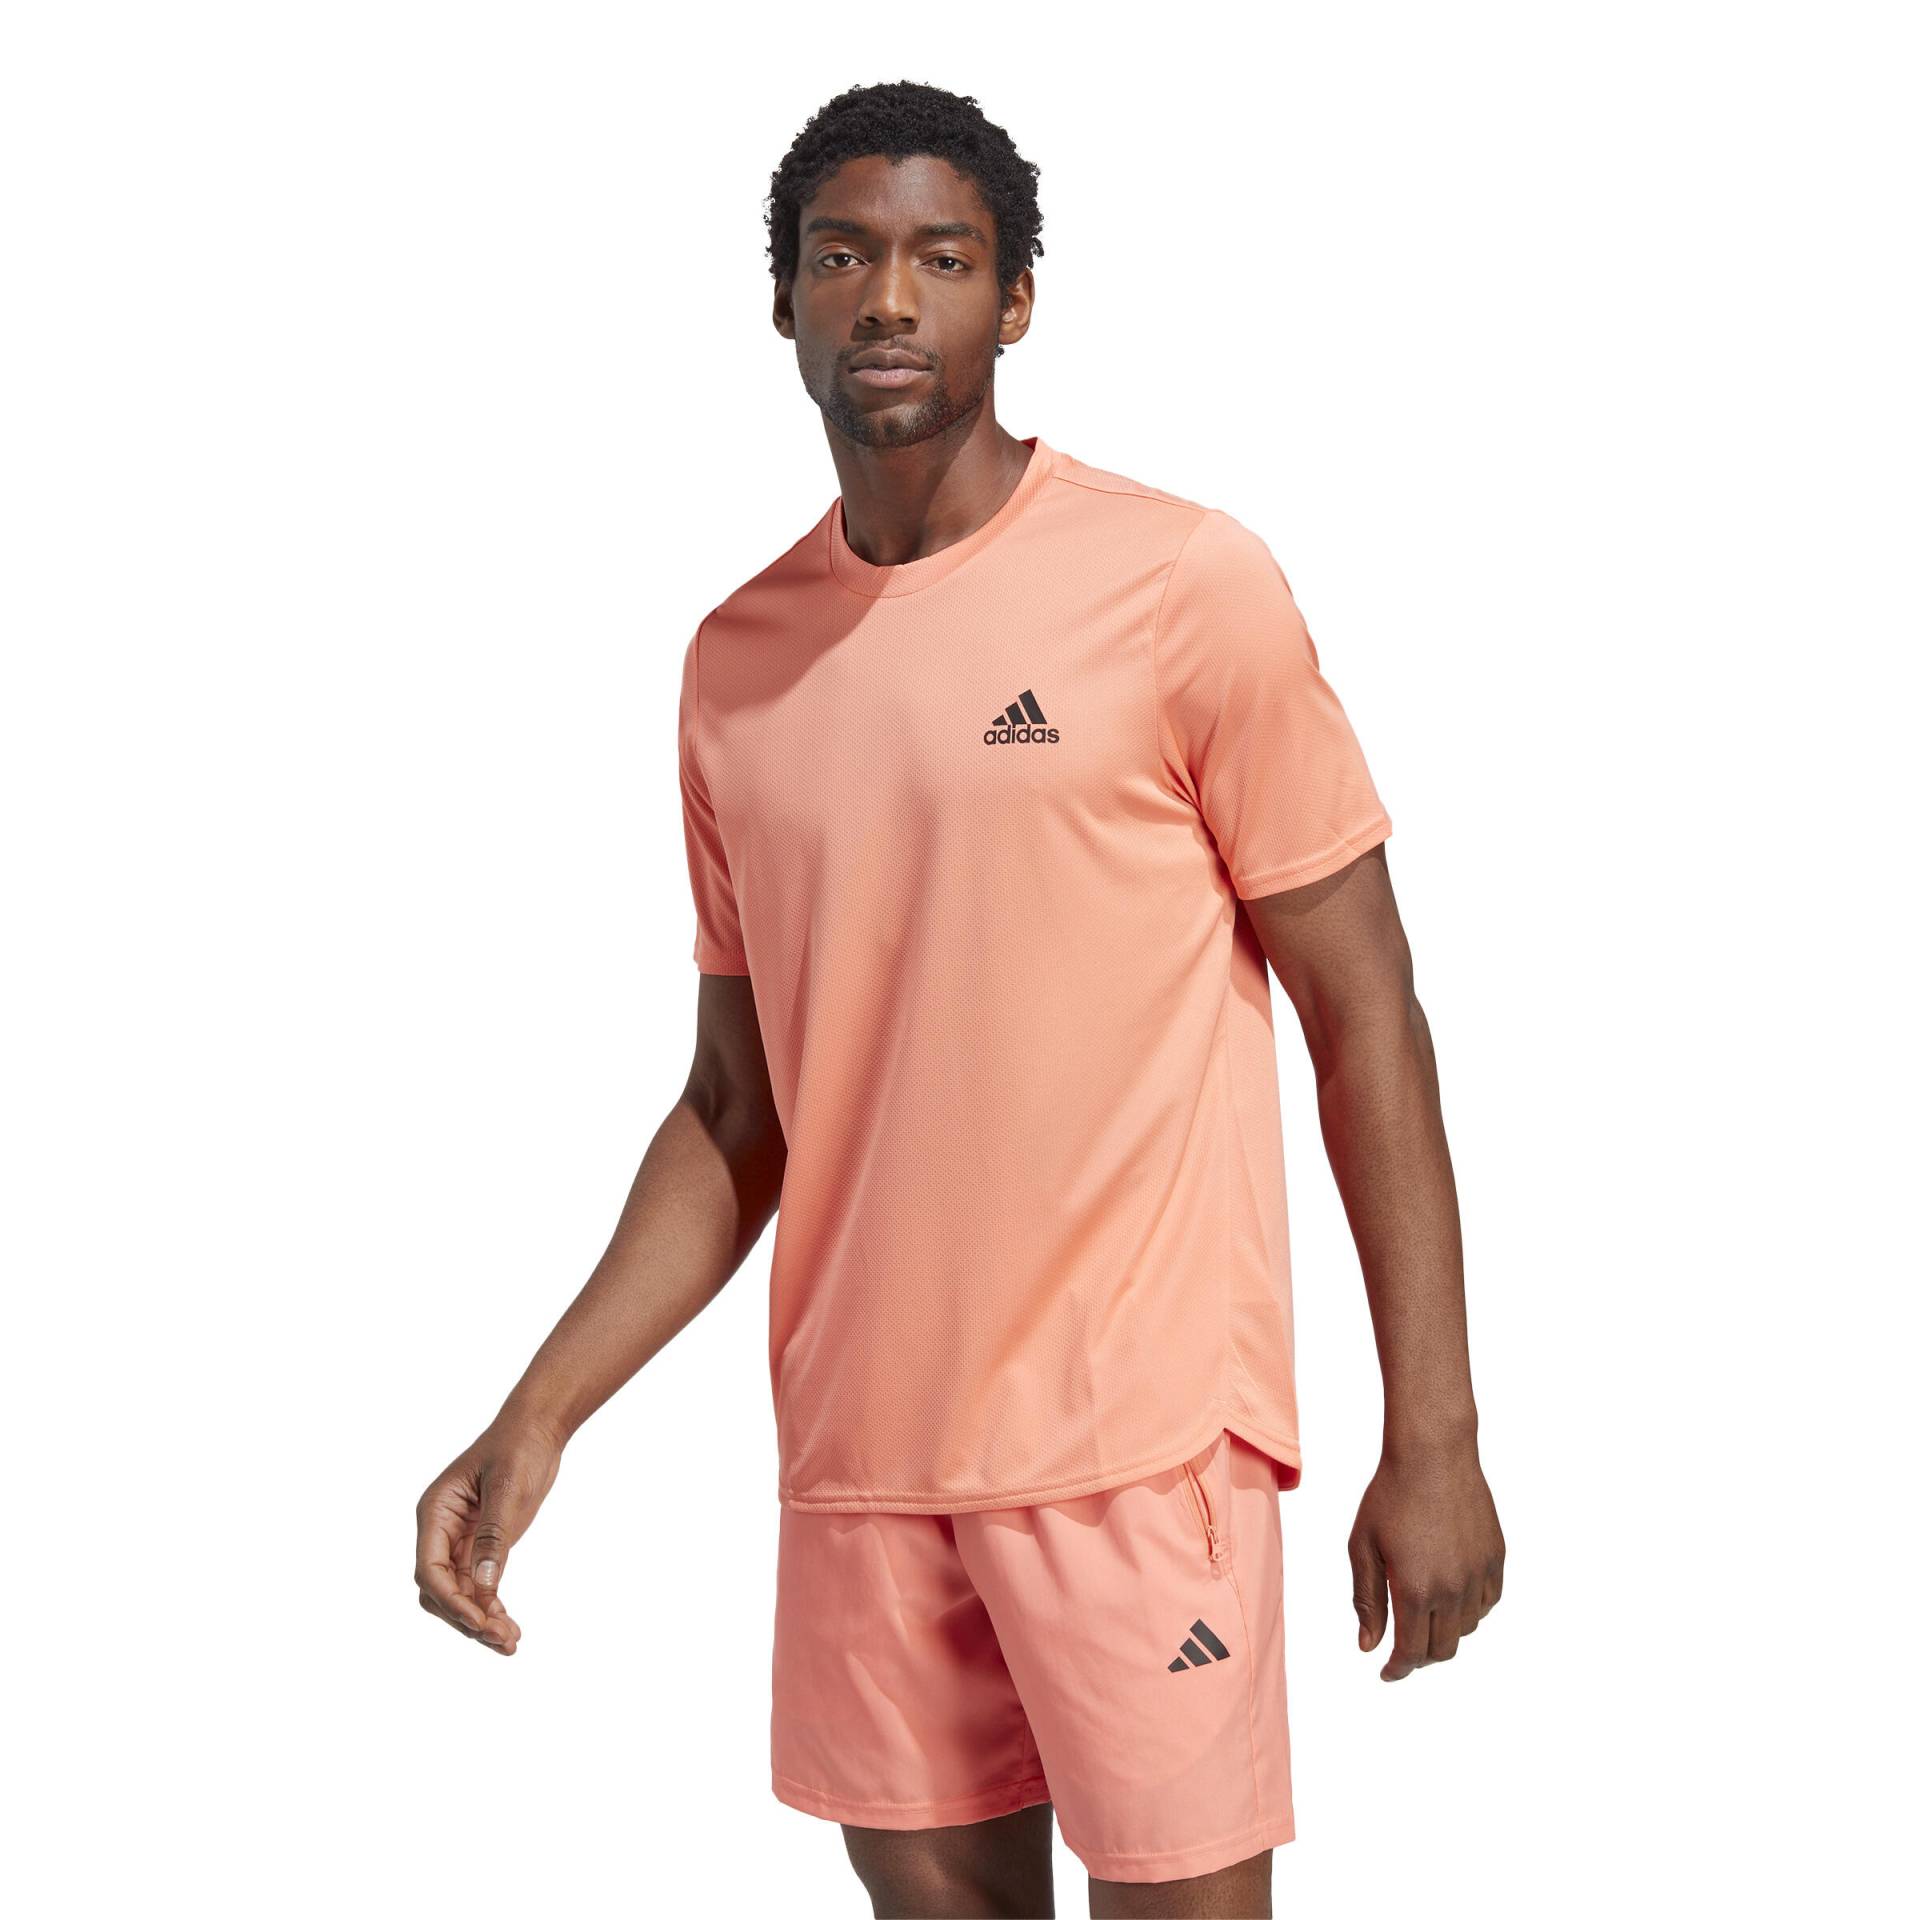 T-Shirt Fitness Cardio Adidas Herren koralle von Adidas